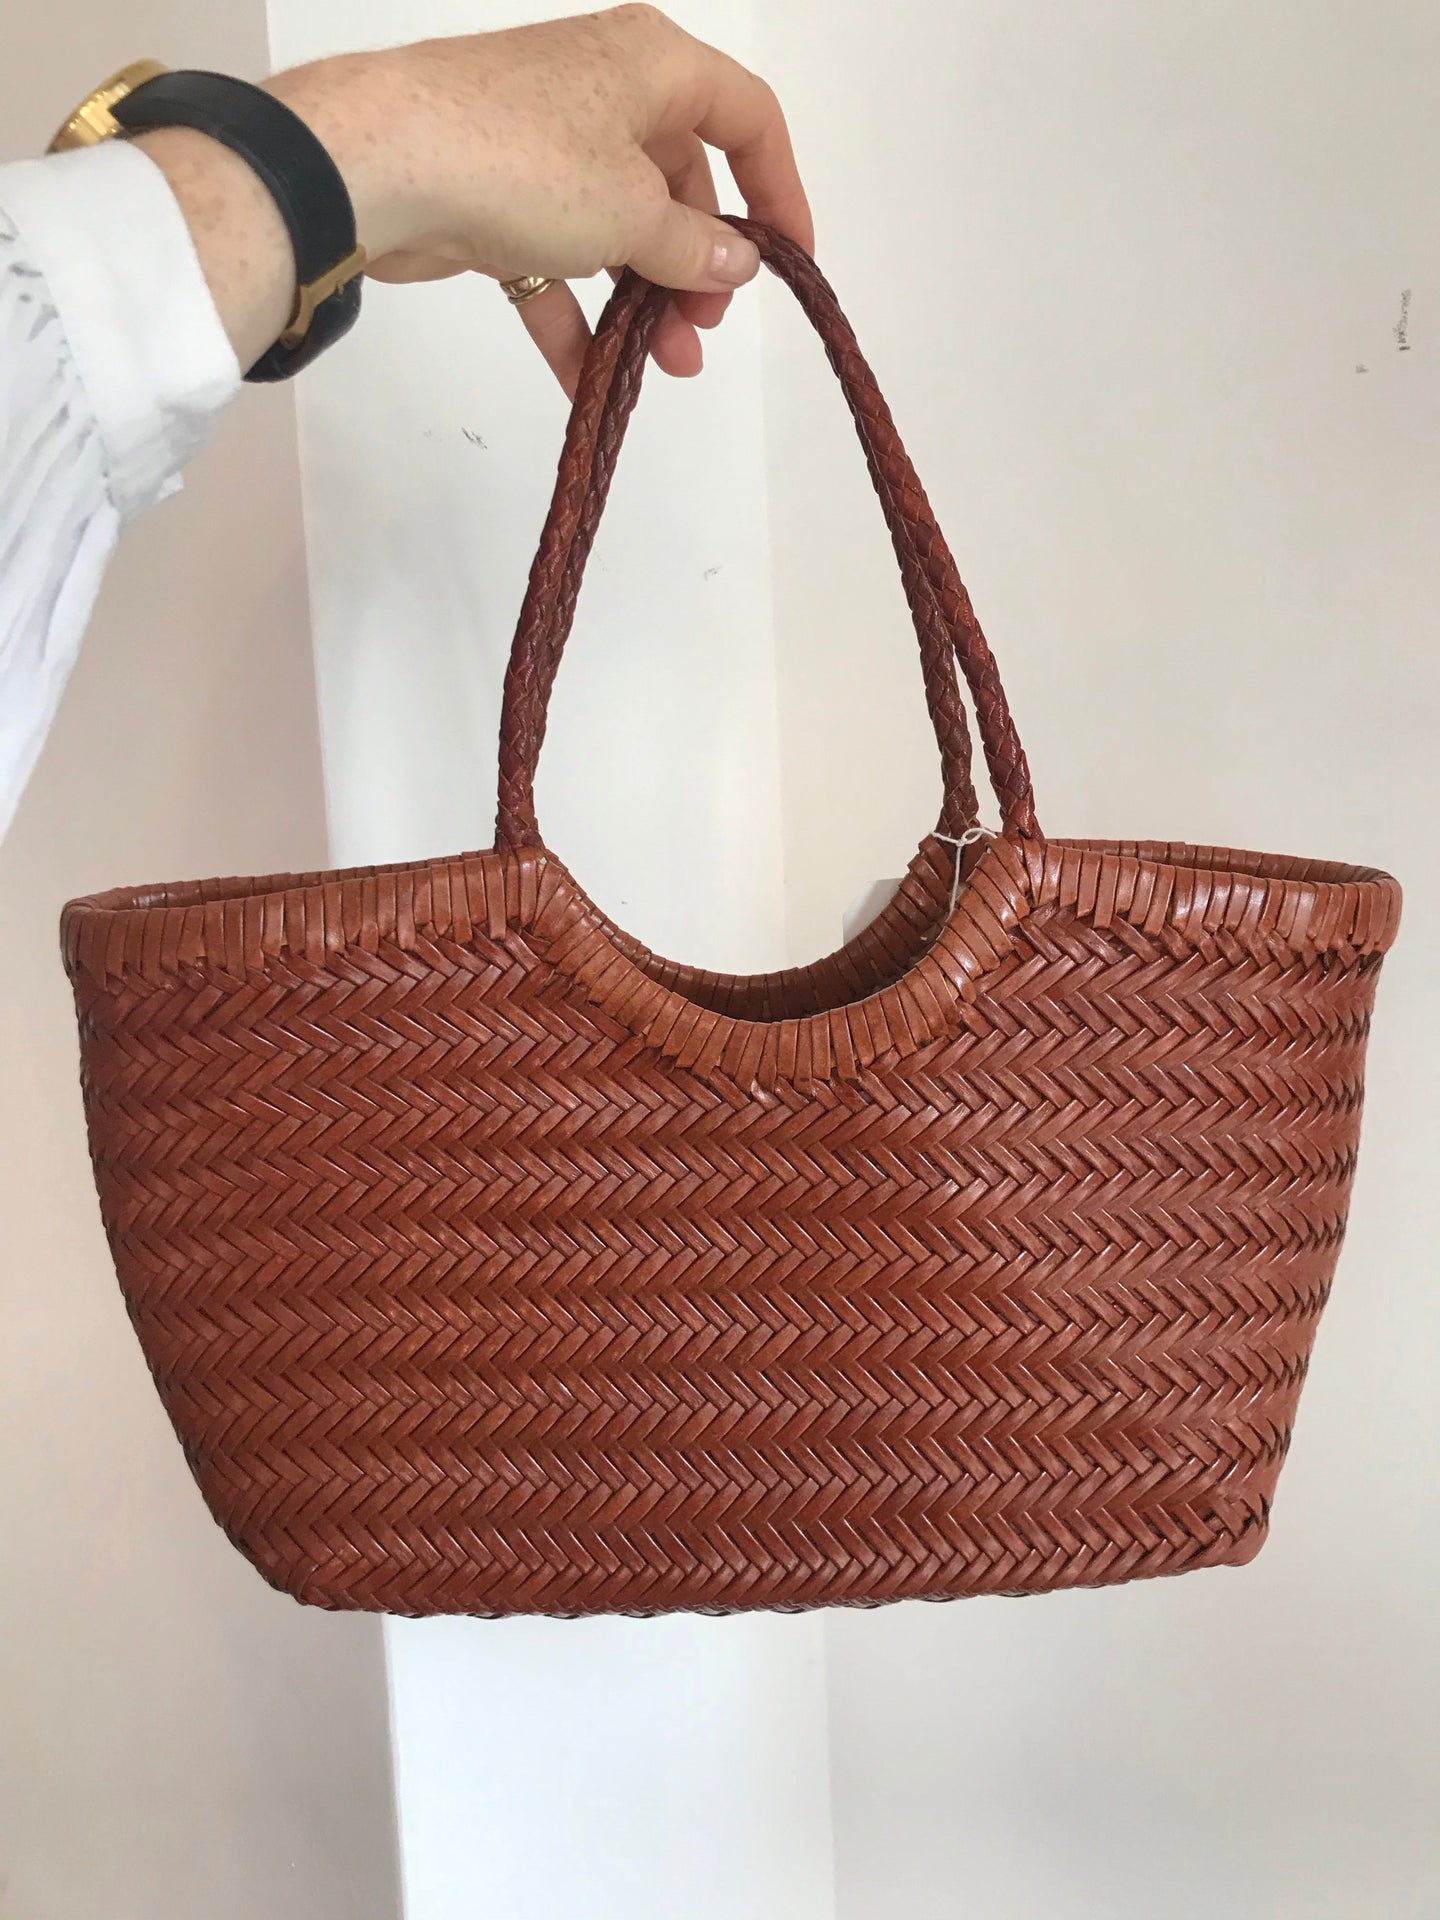 Handwoven Tan Leather Shoulder Bag